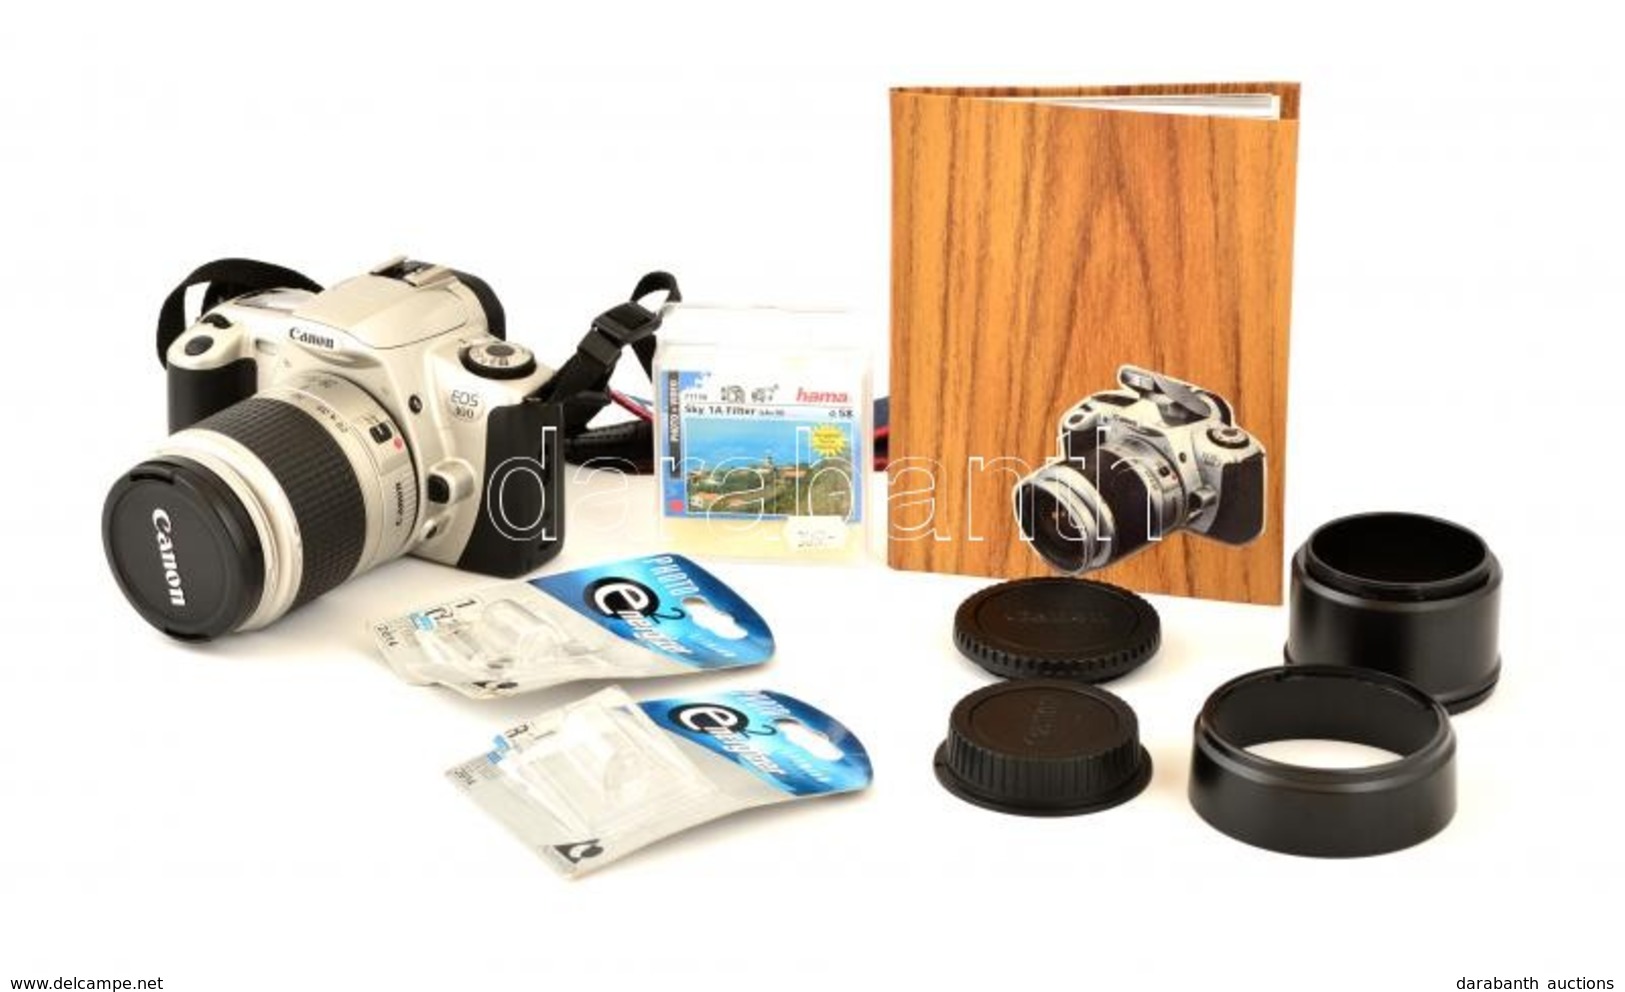 Canon EOS 300 Filmes SLR Fényképezőgép, Canon 28-90 Mm F/4-5.6 Objektívvel, Kiegészítőkkel, Leírással, Szép, Működő álla - Fototoestellen